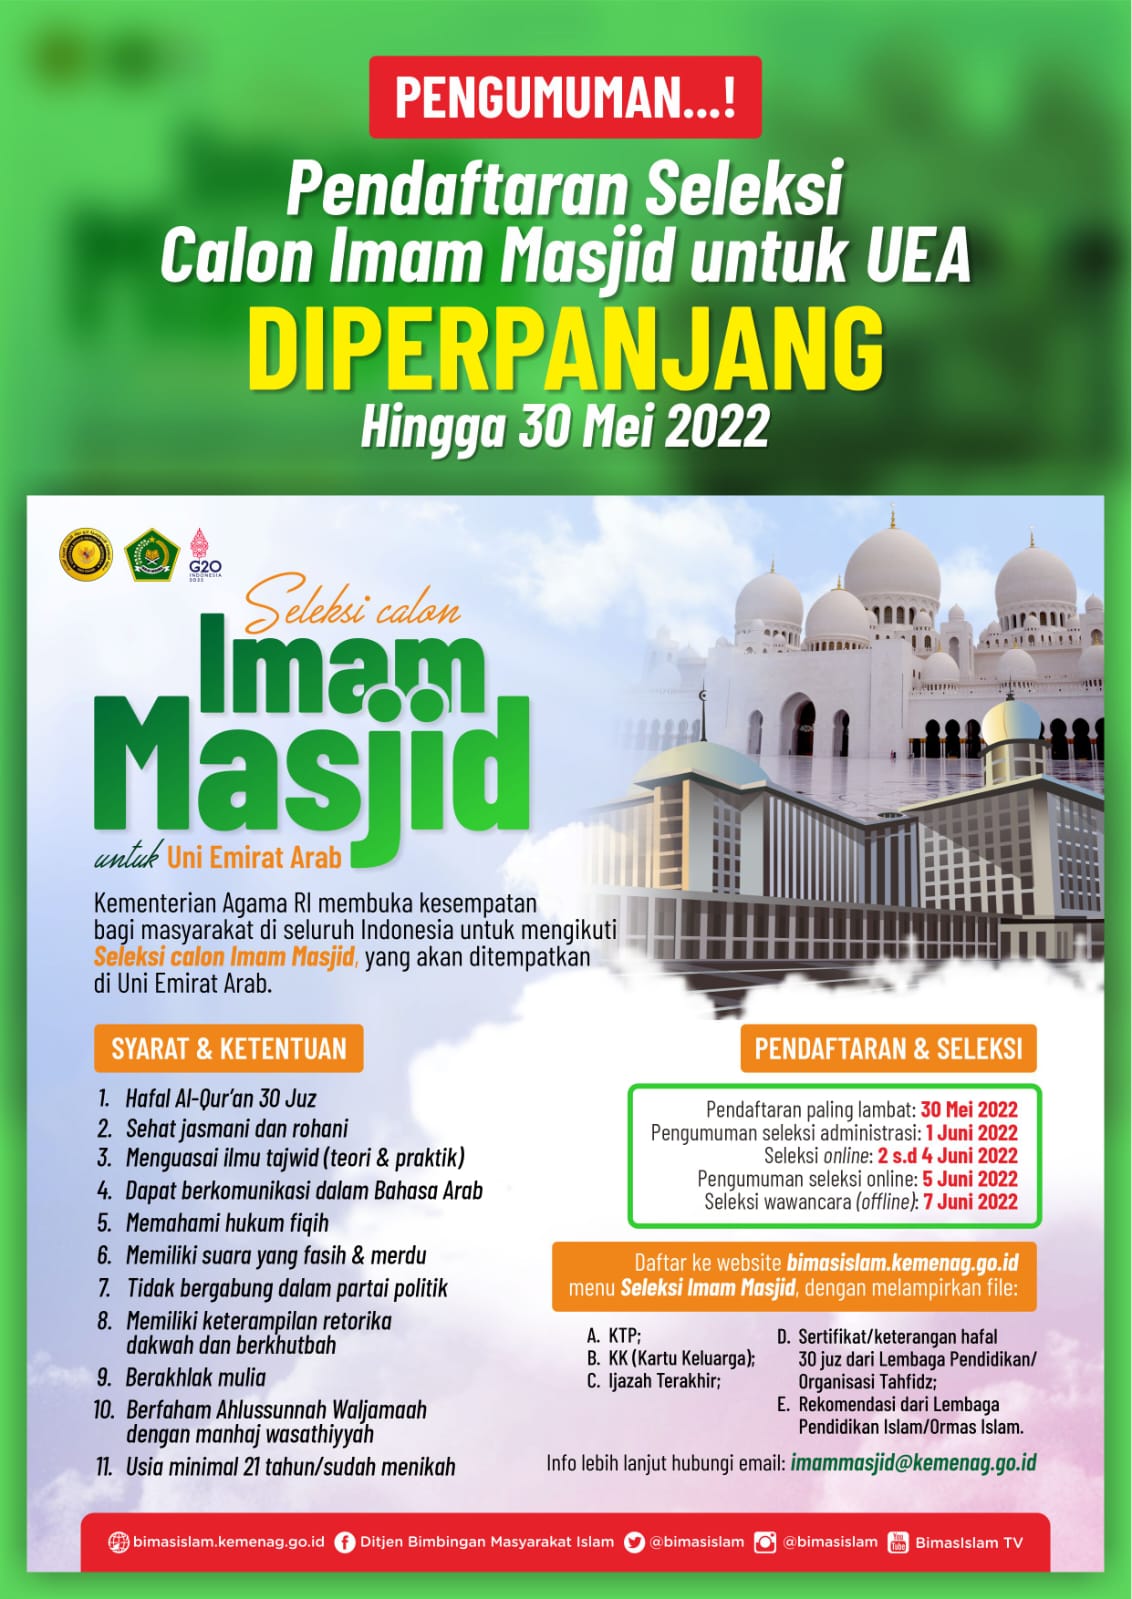 Kemenag Perpanjang Seleksi Imam Masjid untuk UEA Hingga 30 Mei 2022